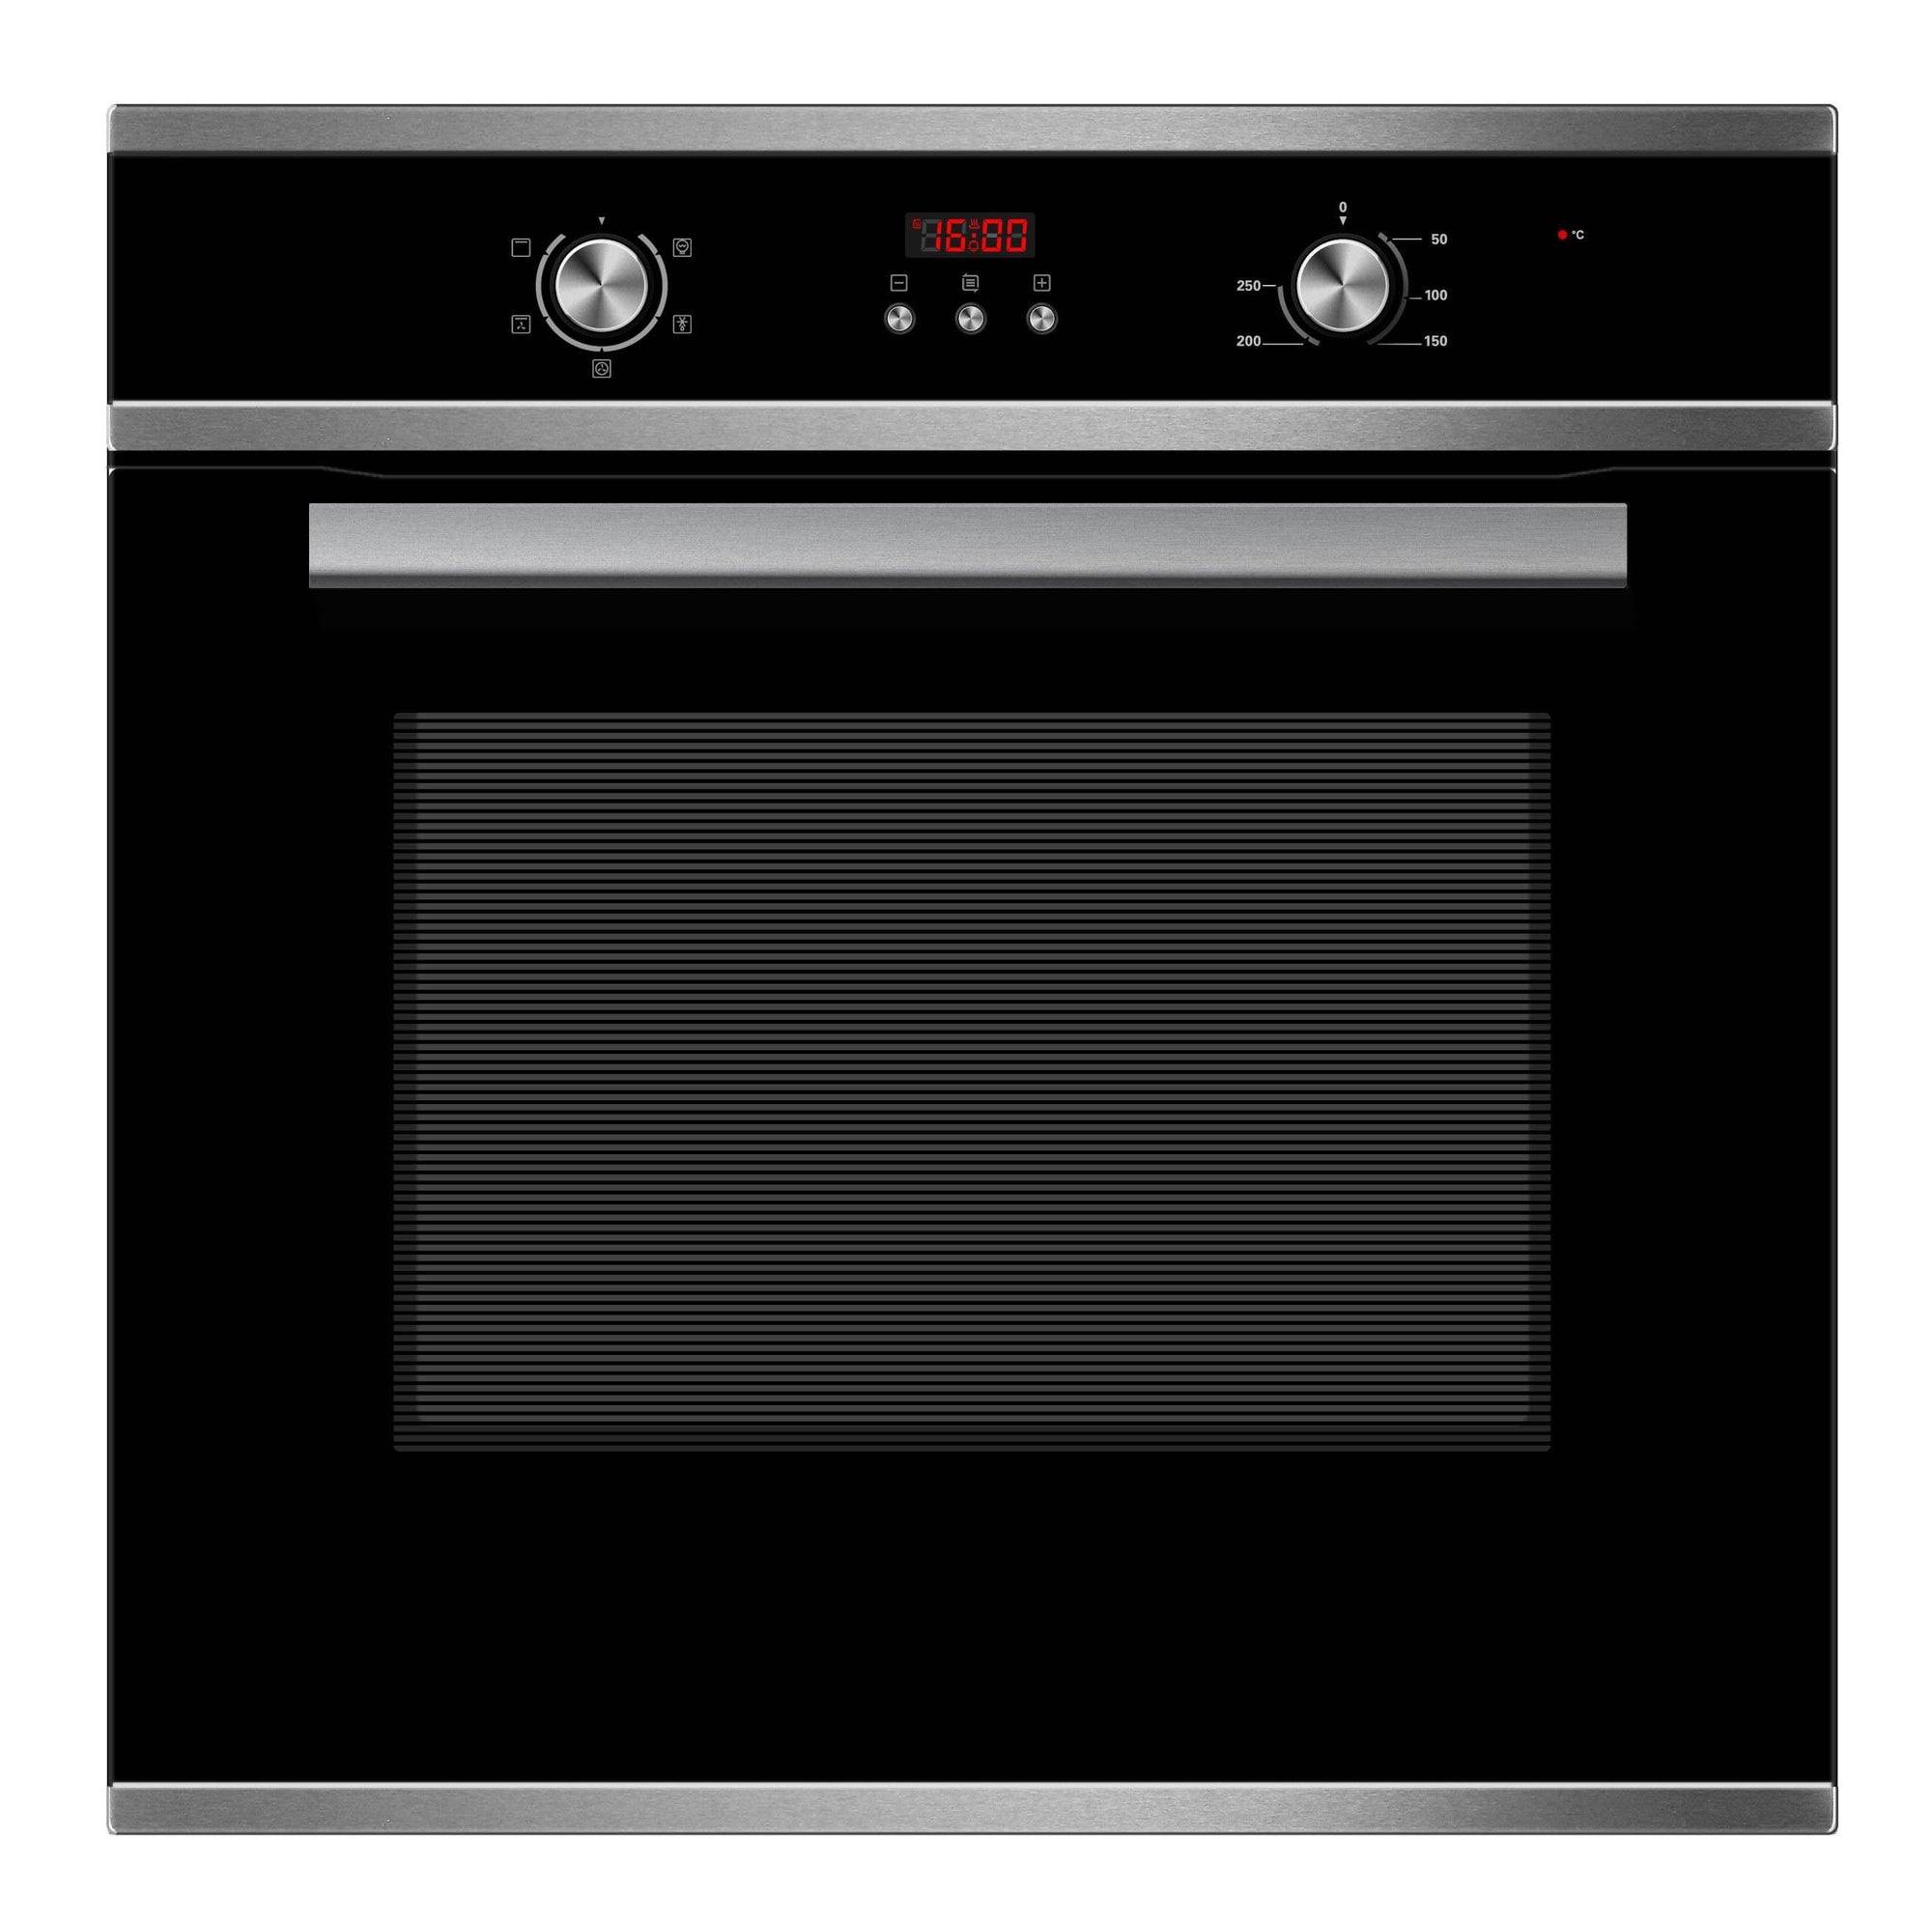 Midea - 60cm Kitchen Appliance Package - Digital